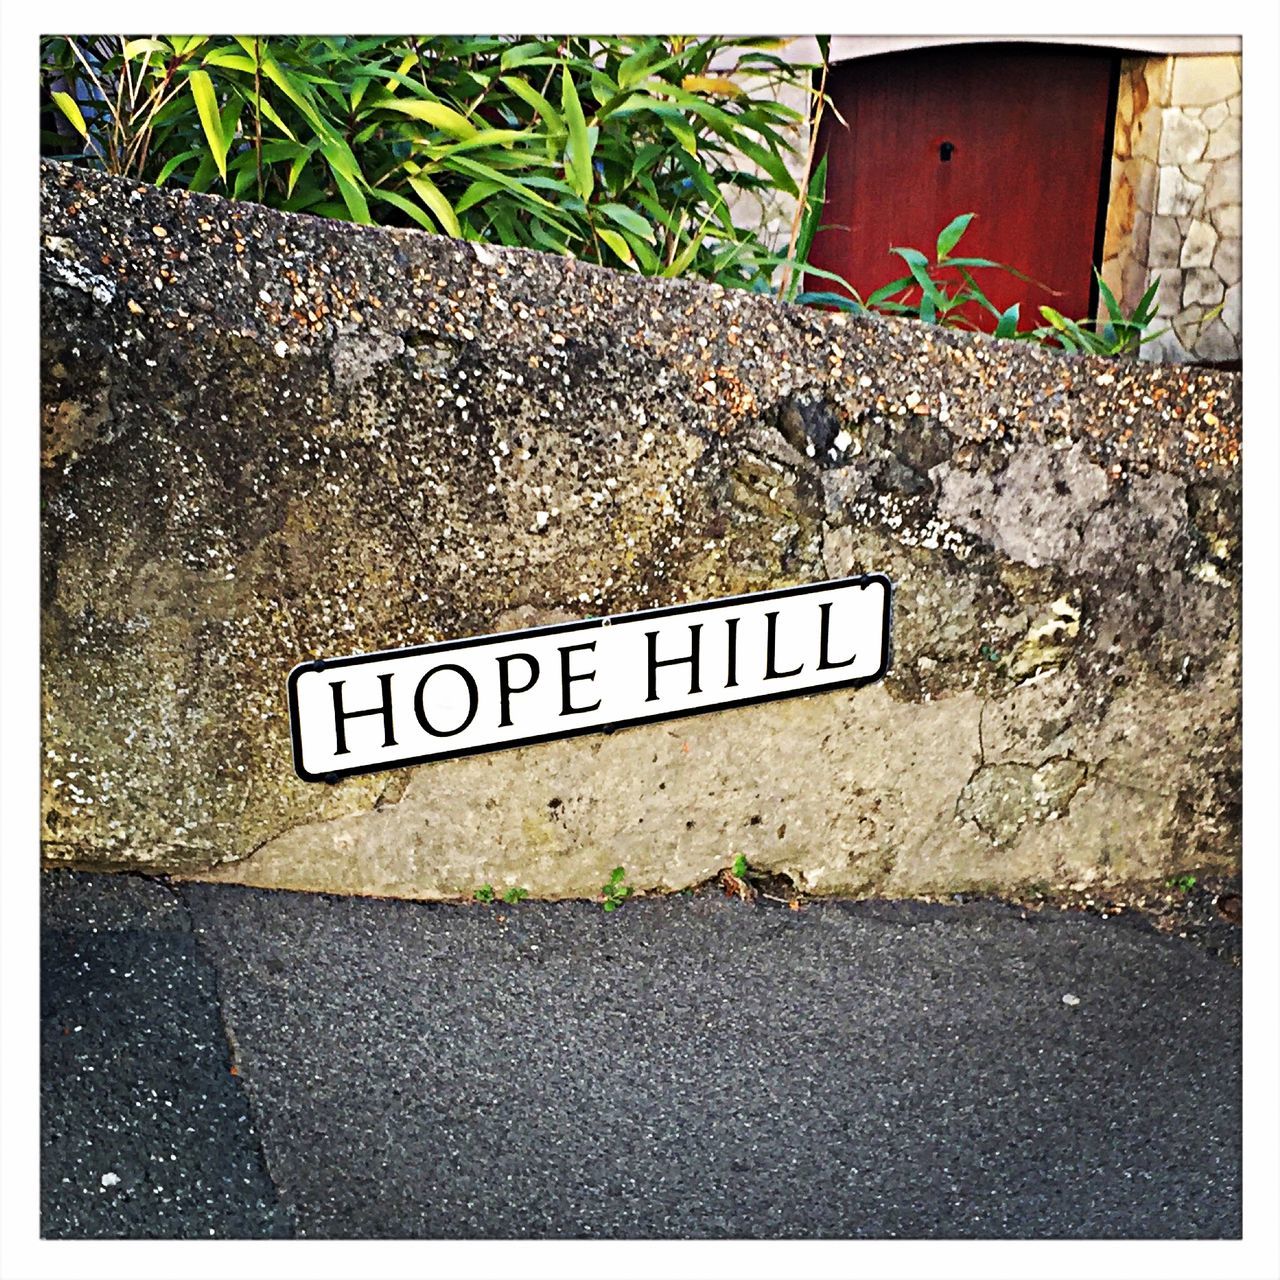 Hope hill